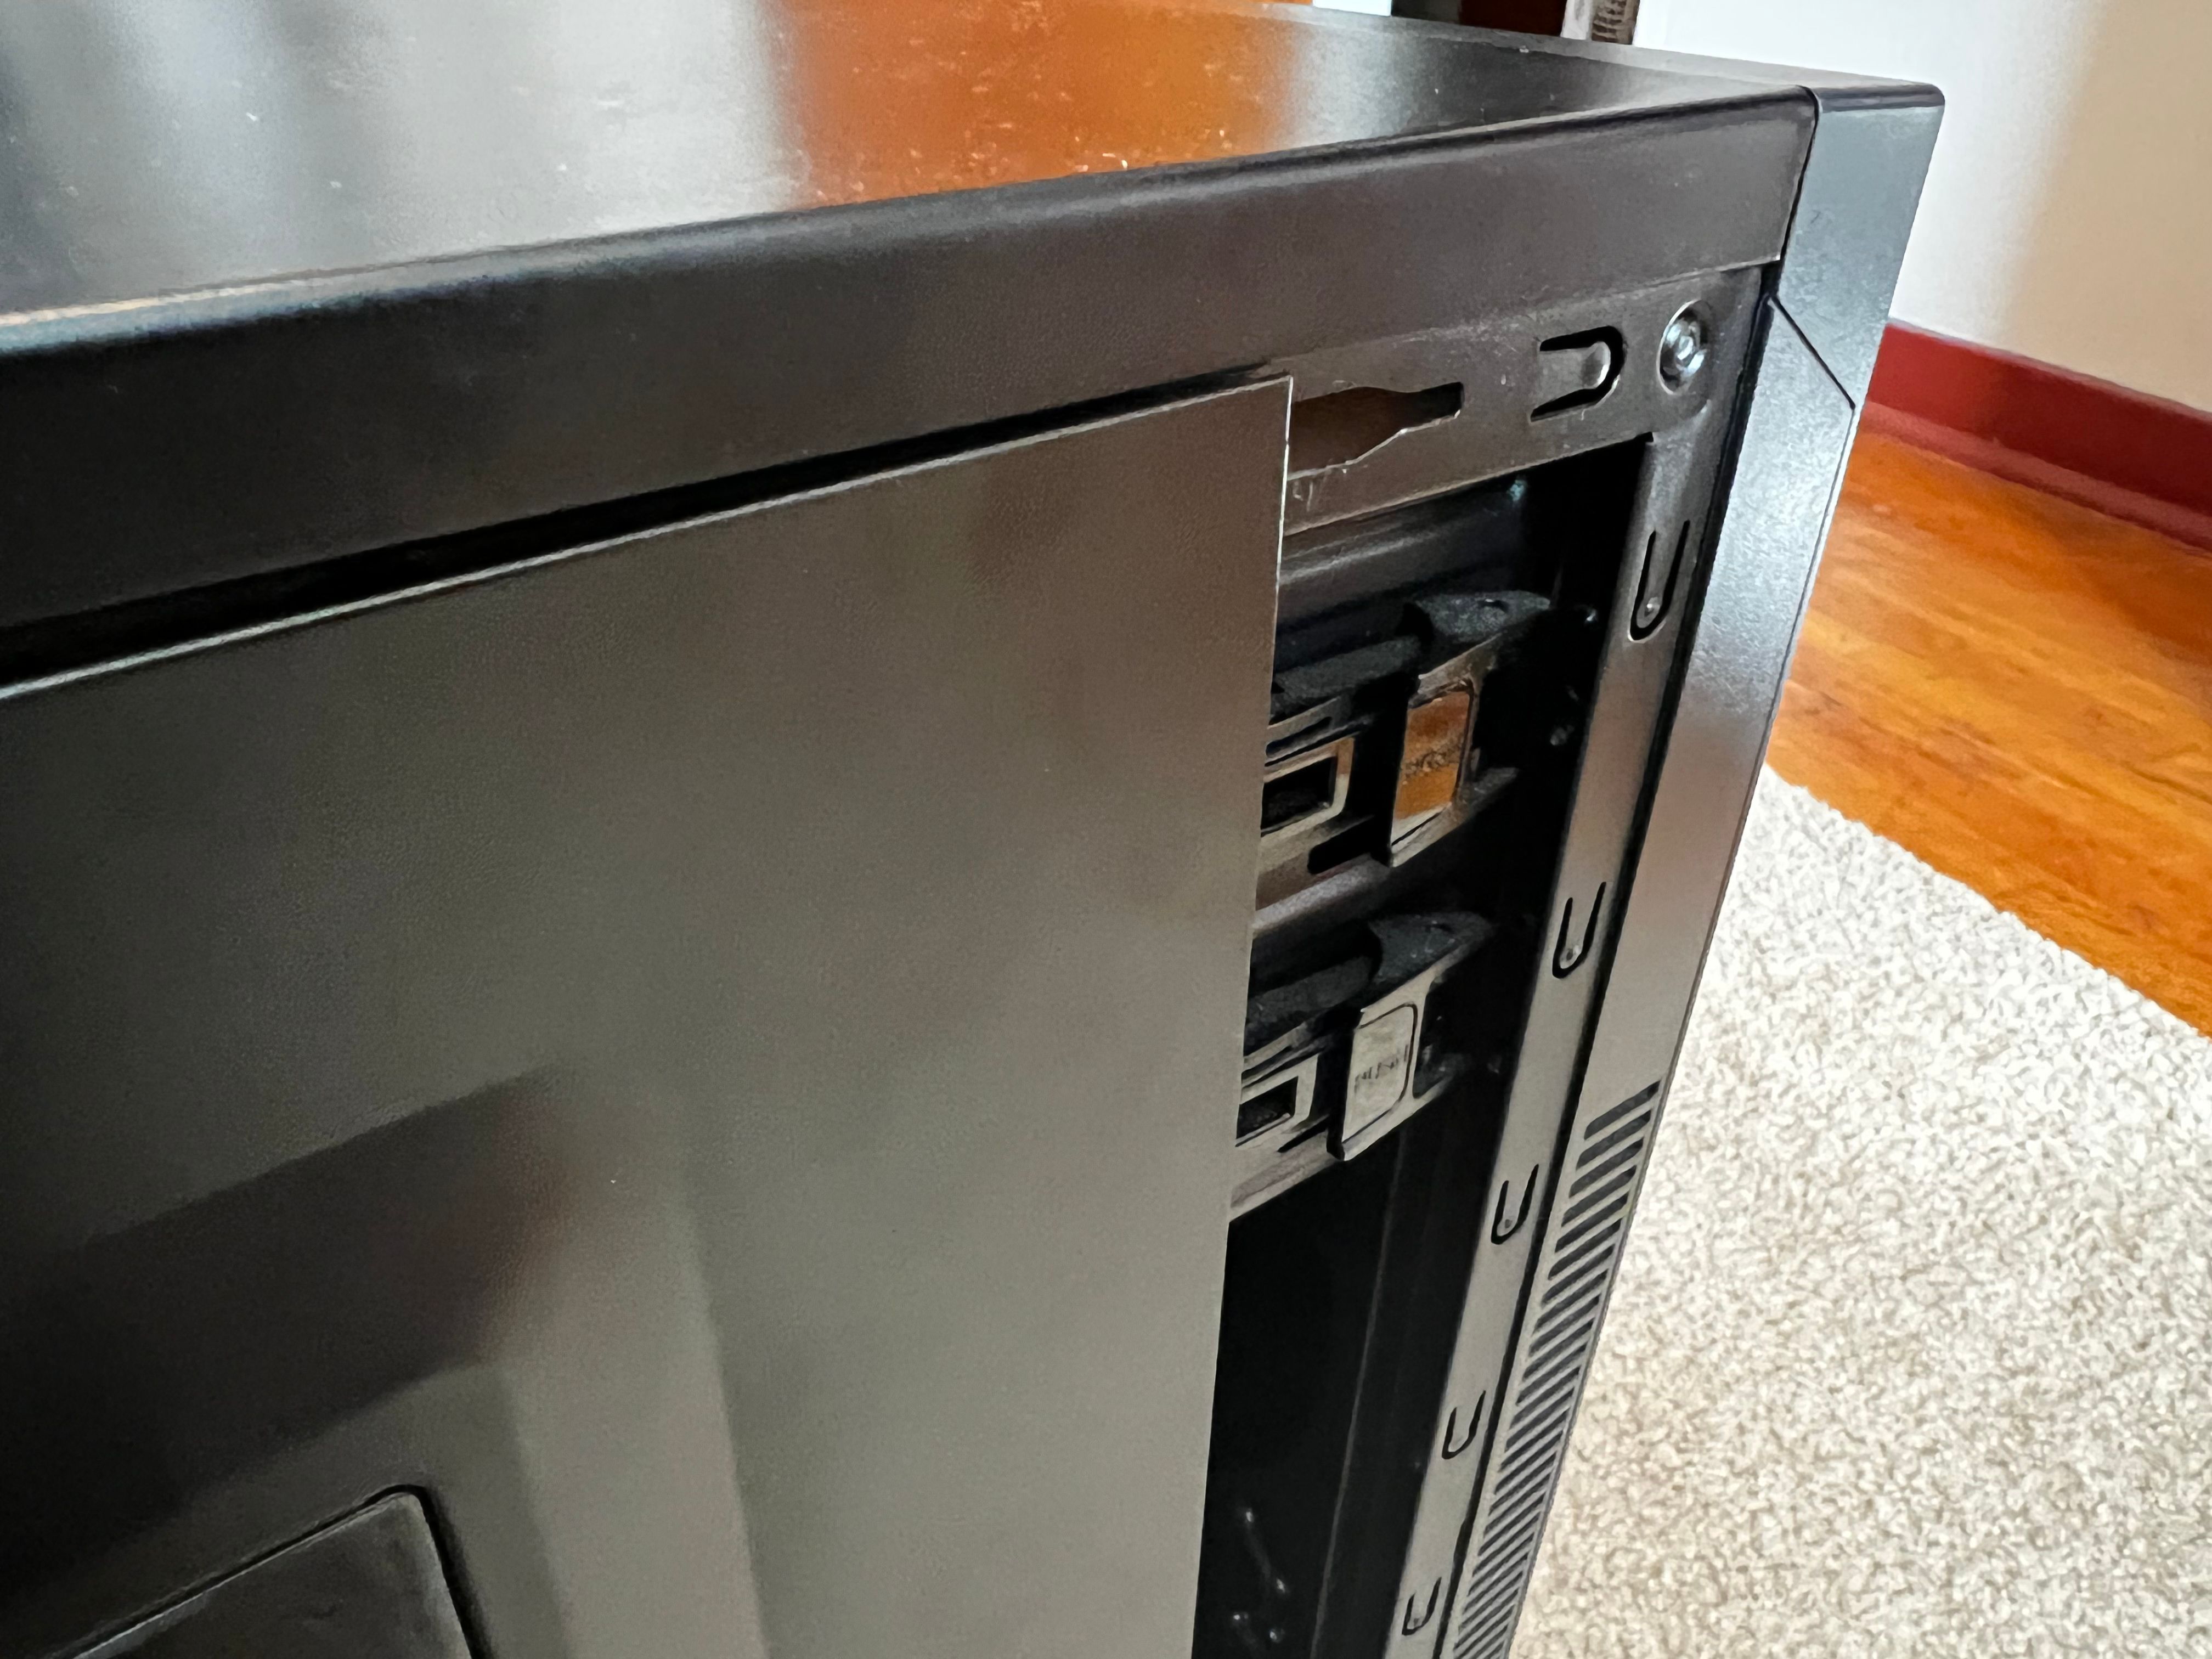 08 PC Case Replace Side - Come pulire il tuo PC desktop